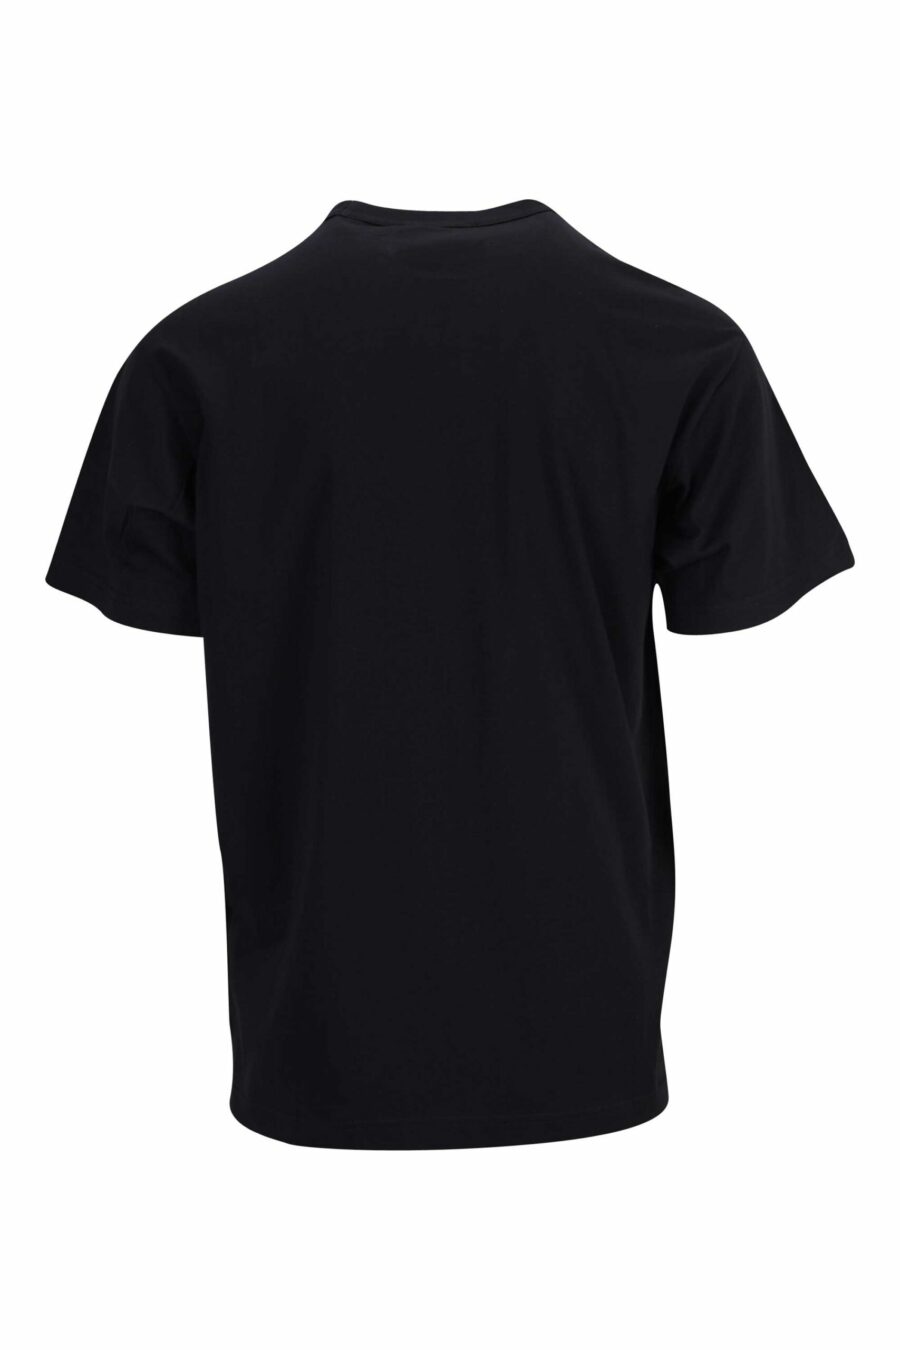 T-shirt preta com mini-logotipo circular em contraste - 8052019471700 1 scaled